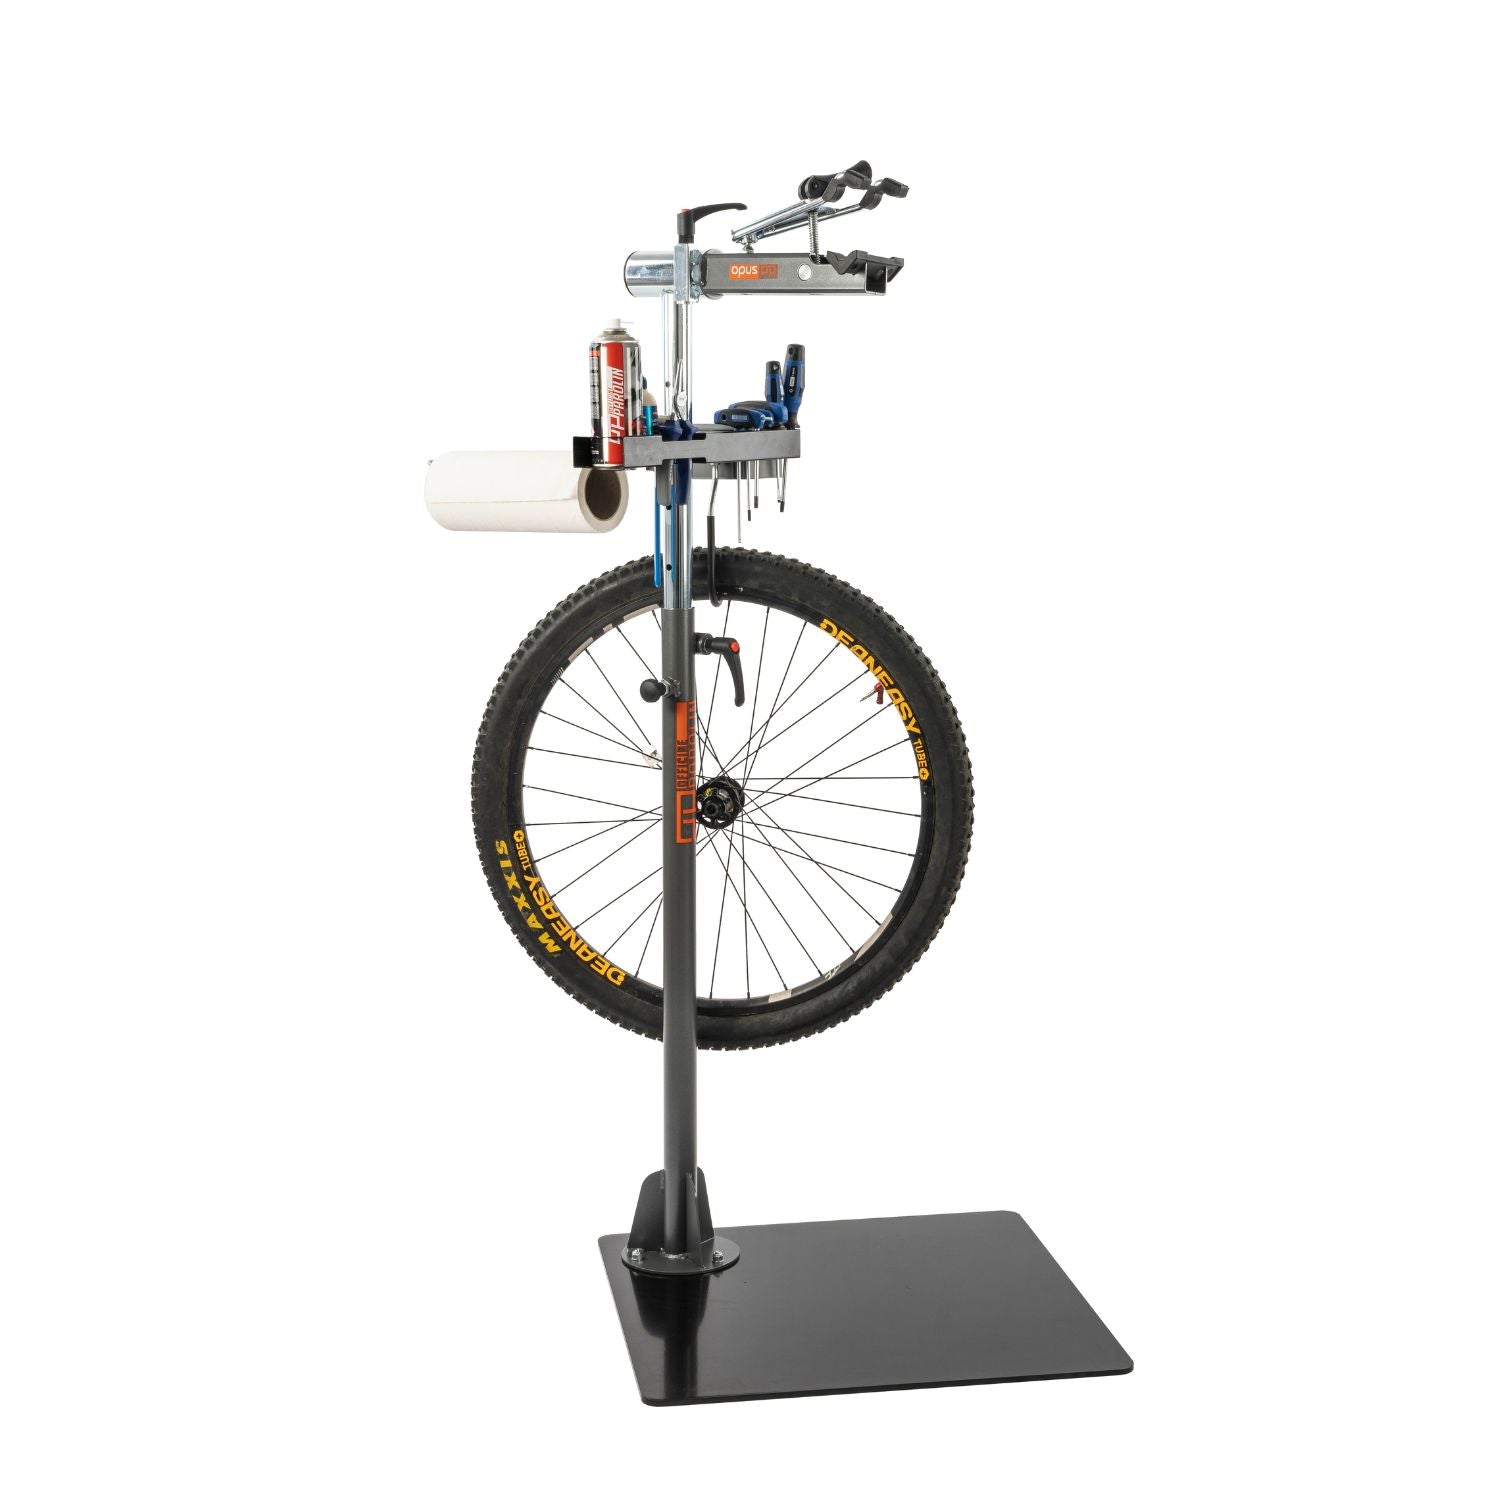 Support de stationnement de vélo vertical – Ma boutique